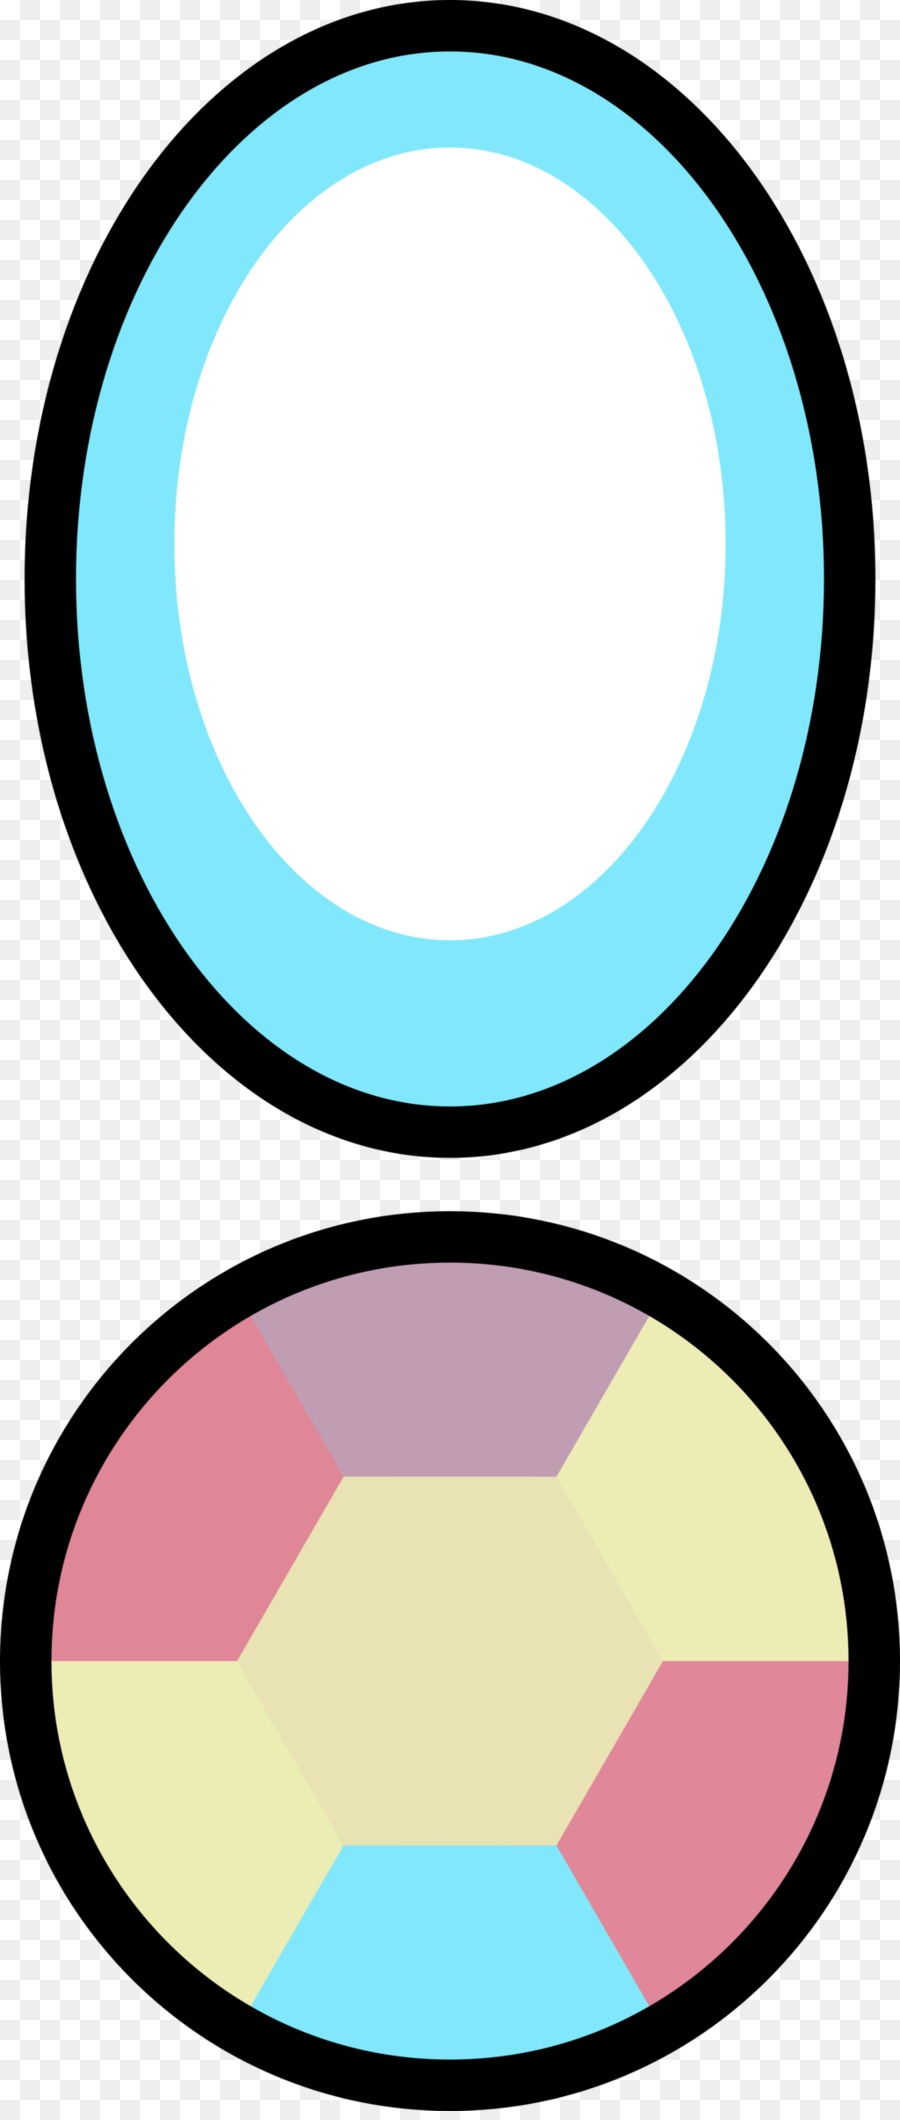 Kreis Oval Bereich Clip art - Gemini